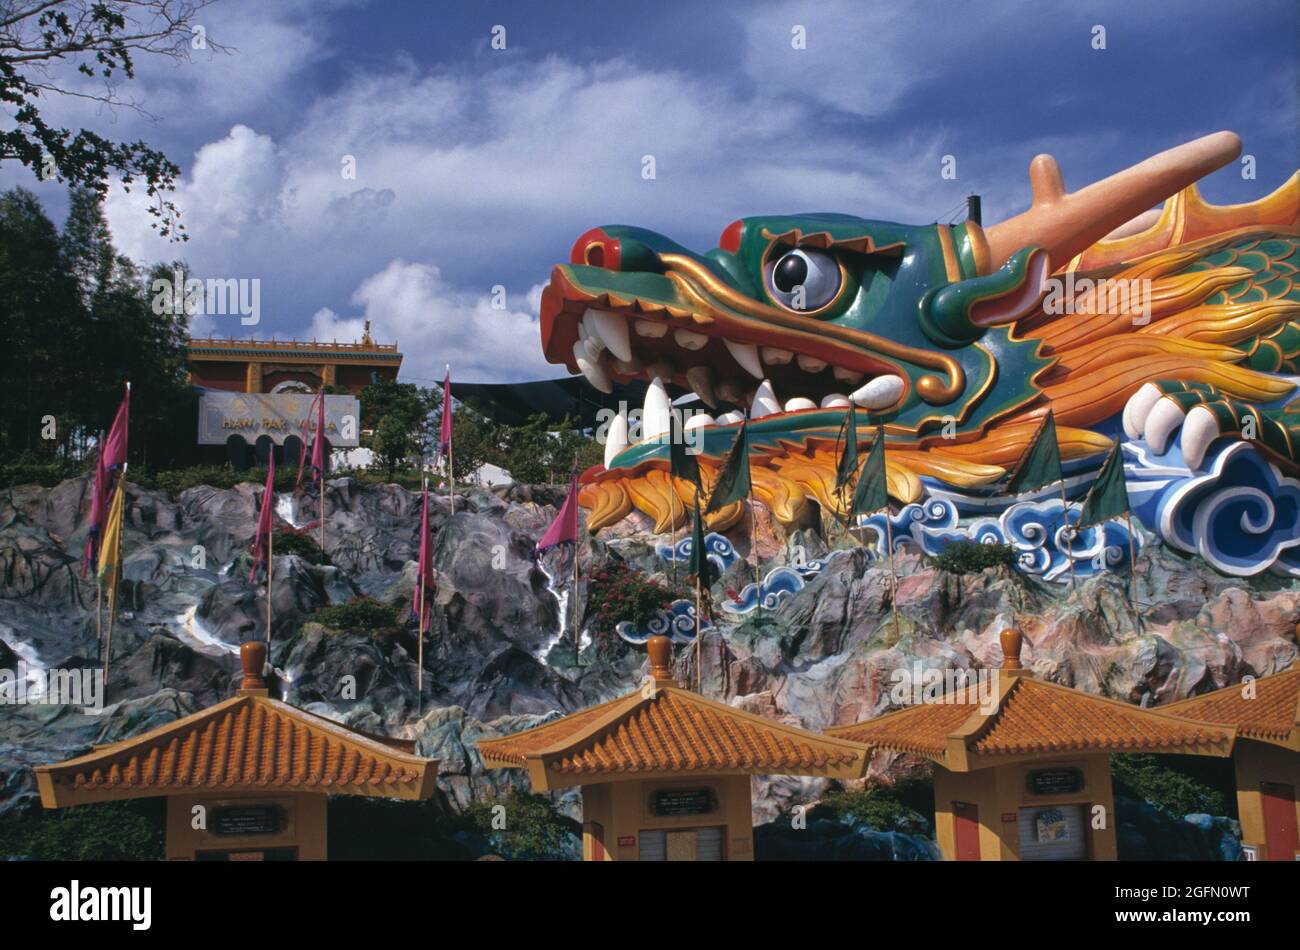 Singapore. Historic Haw Par Villa theme park. Dragon head sculpture. Stock Photo